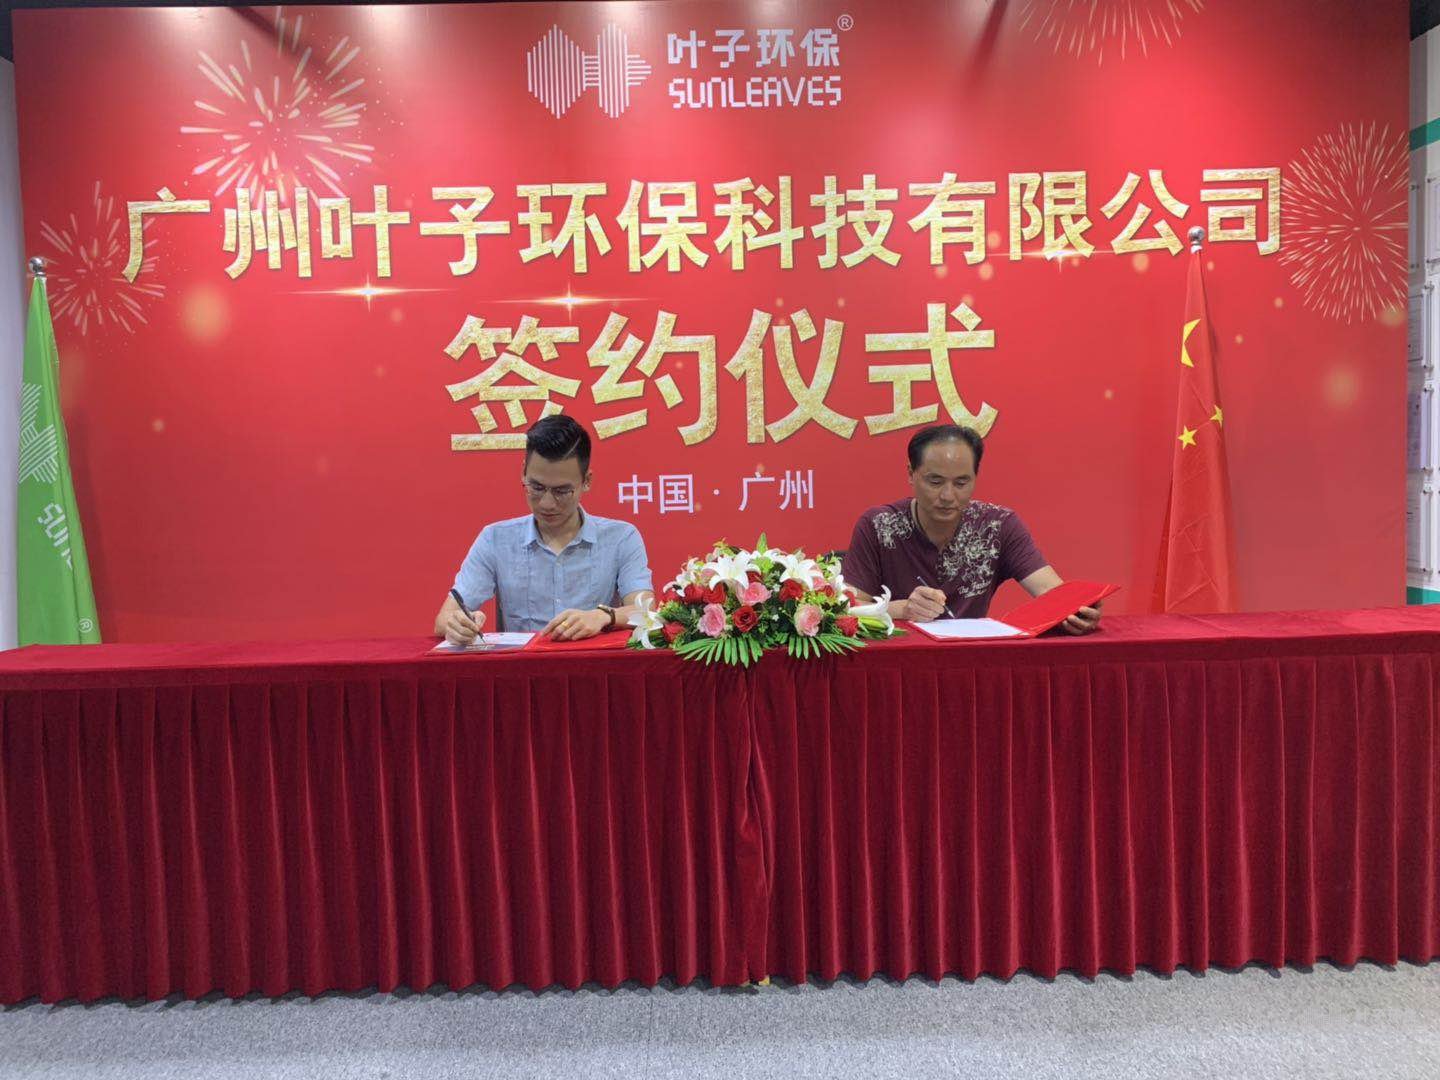 6月3日惠州加盟商签约叶子环保，共赢除甲醛未来